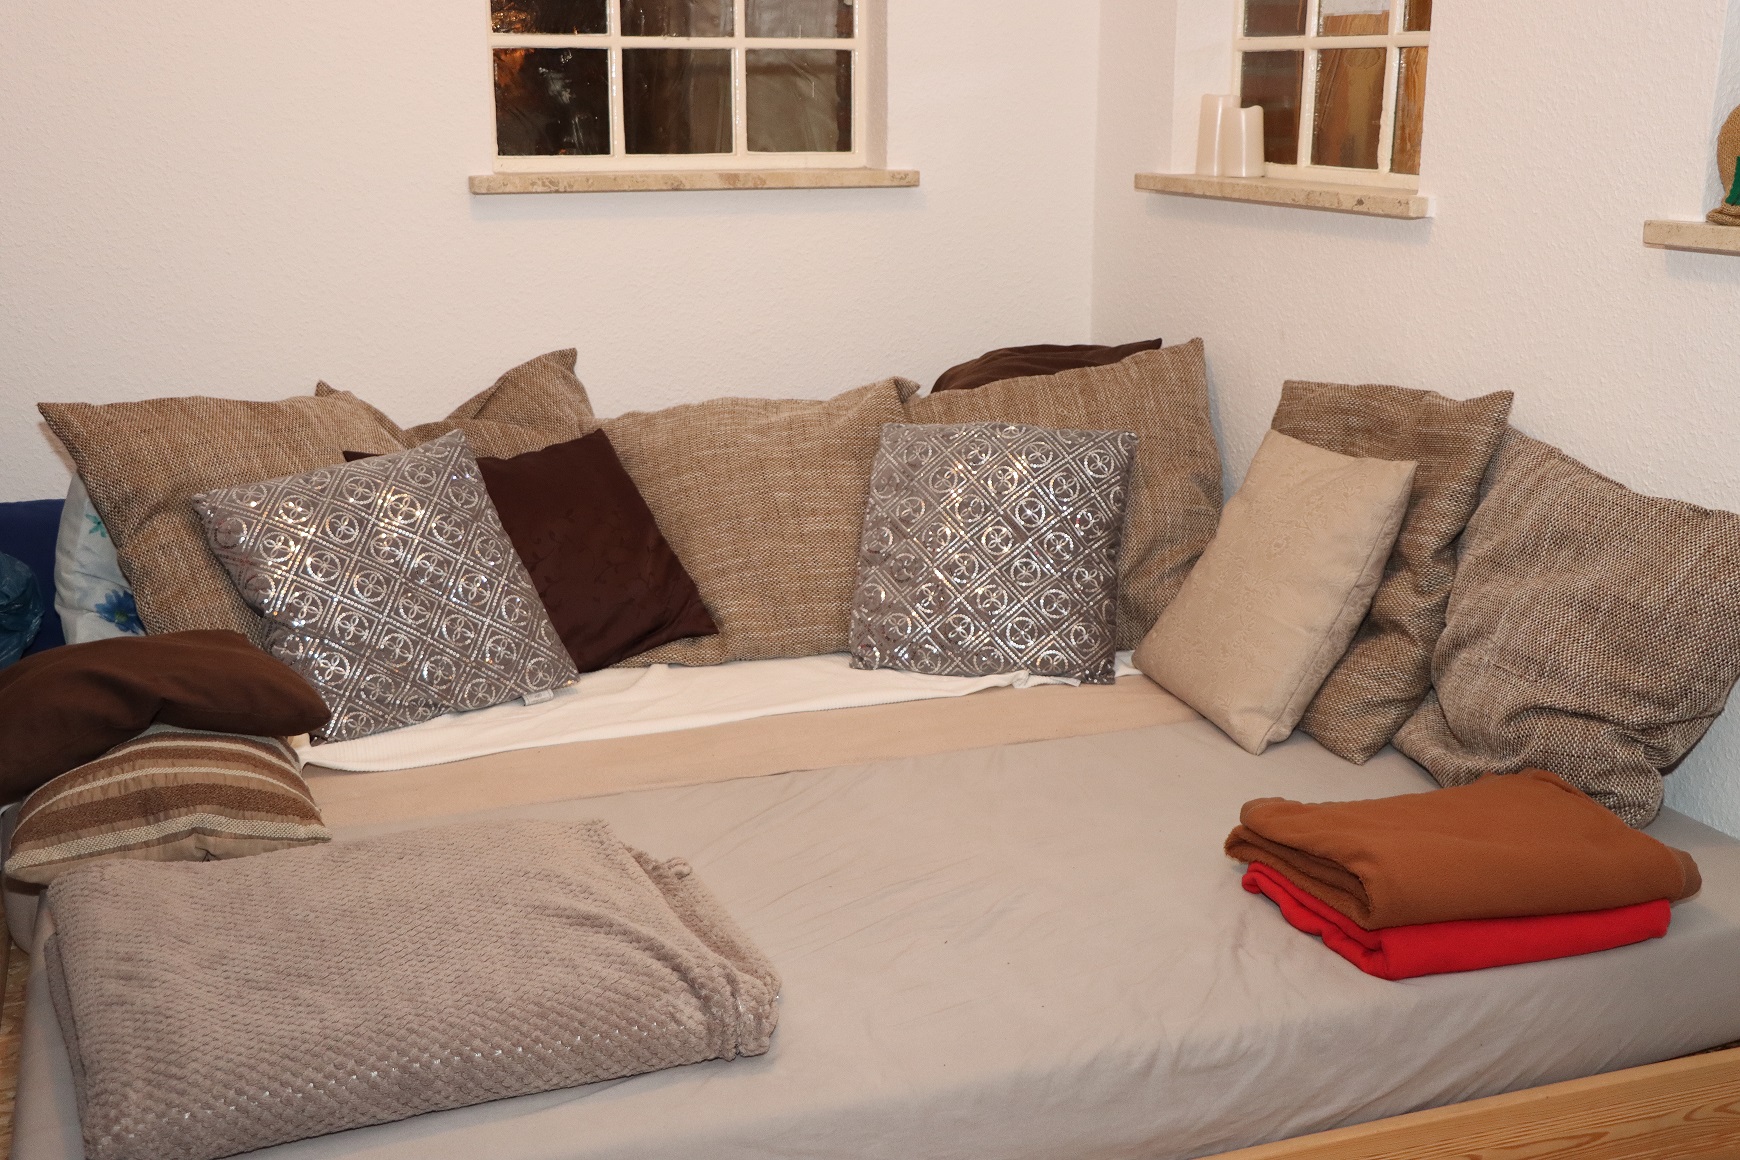 Ein Schlafplatz mit vielen Kissen und zwei Decken in einem Wohnzimmer